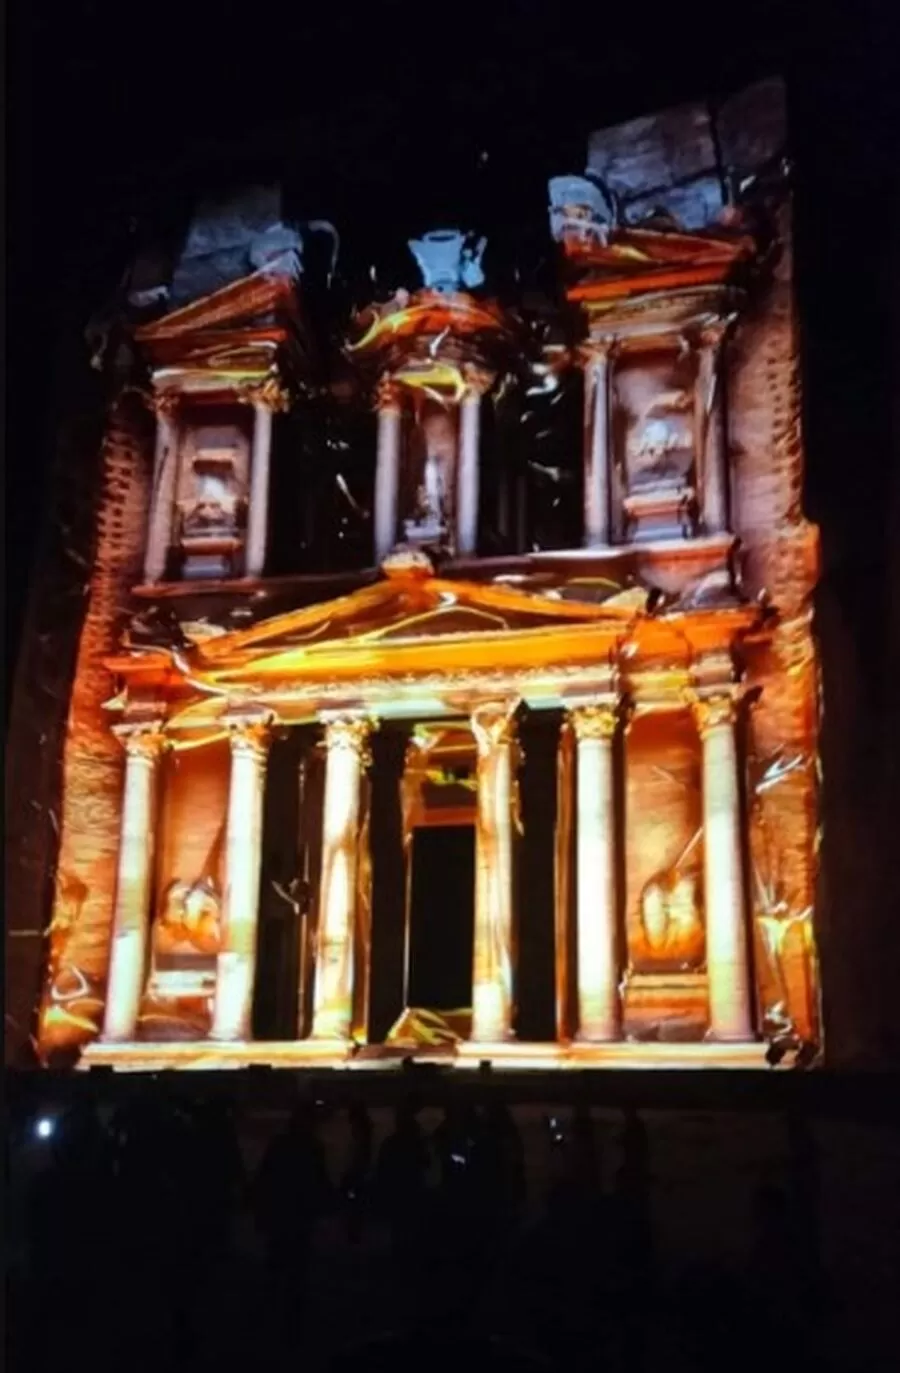 مهرجان البترا الضوئي
تقنيات حديثة لعرض التراث العالمي
تنويع المنتج السياحي في البترا